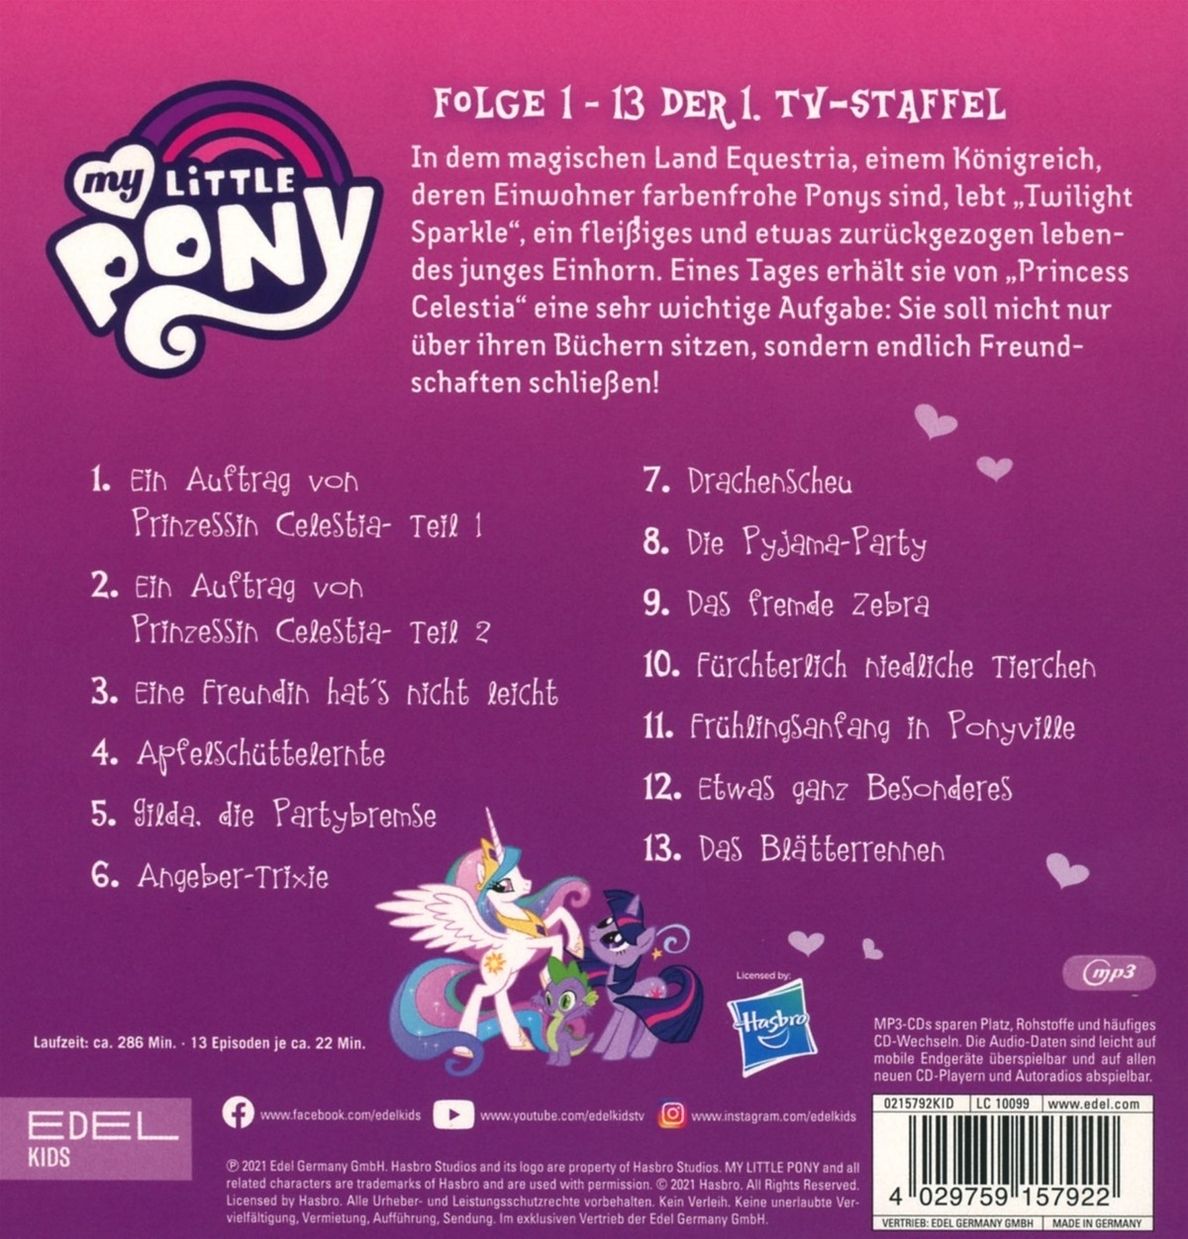 My Little Pony, Audio-CD kaufen | tausendkind.at